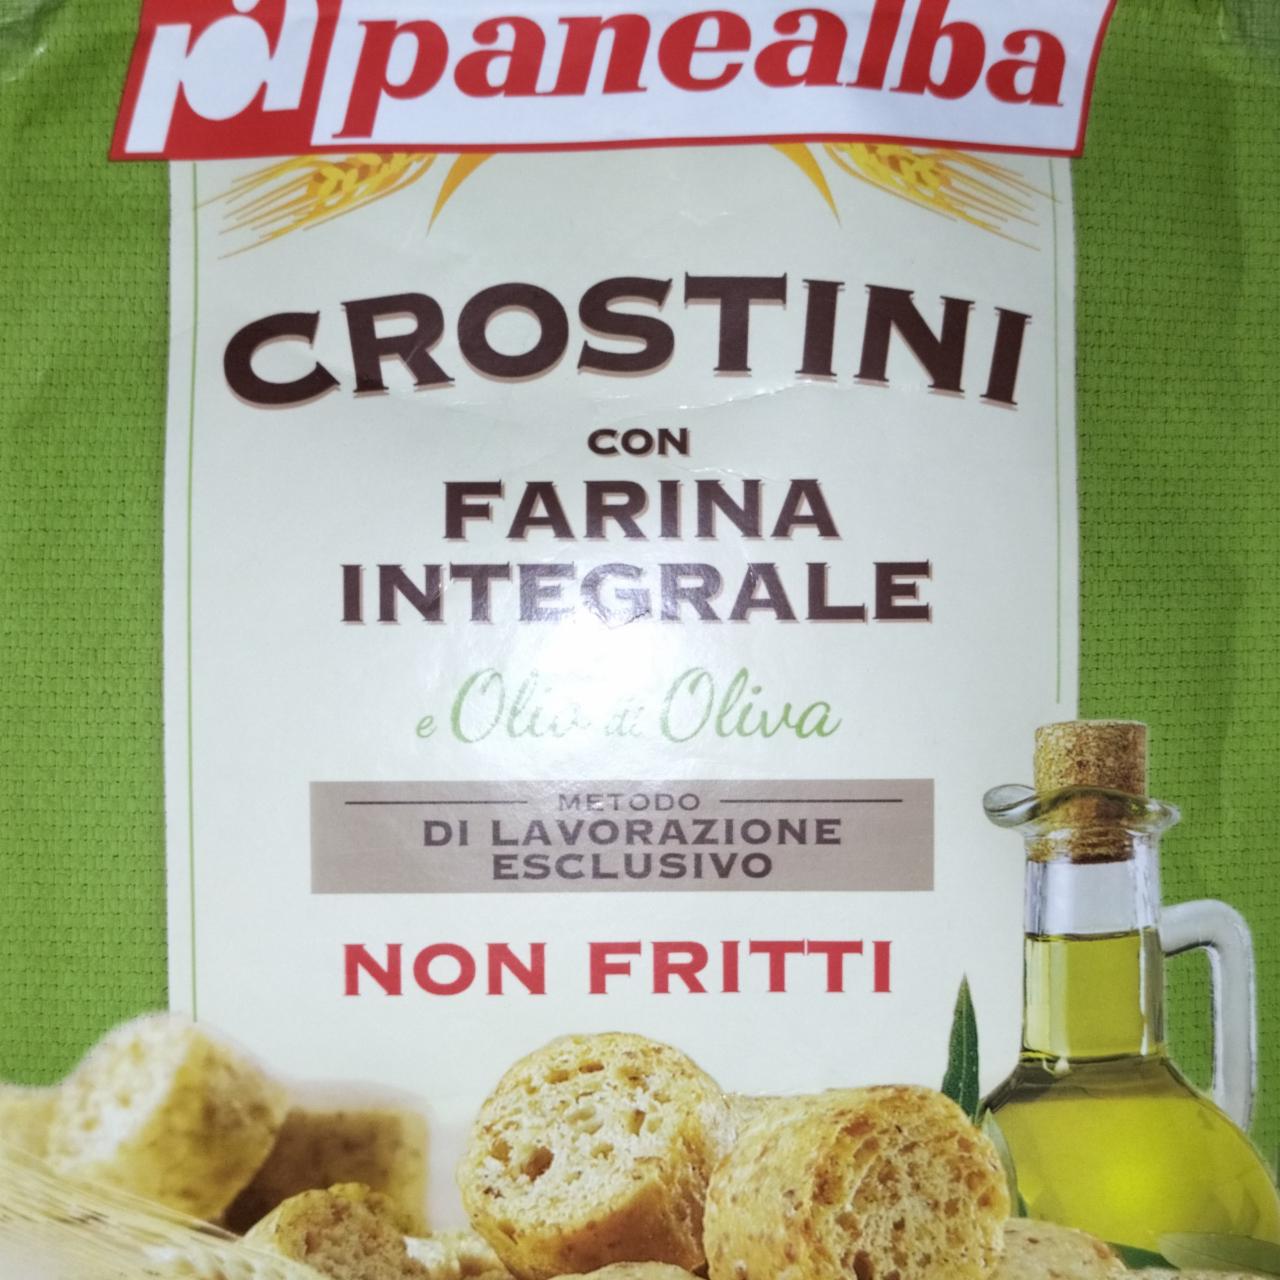 Fotografie - Crostini con farina integrale e olio e oliva Panealba